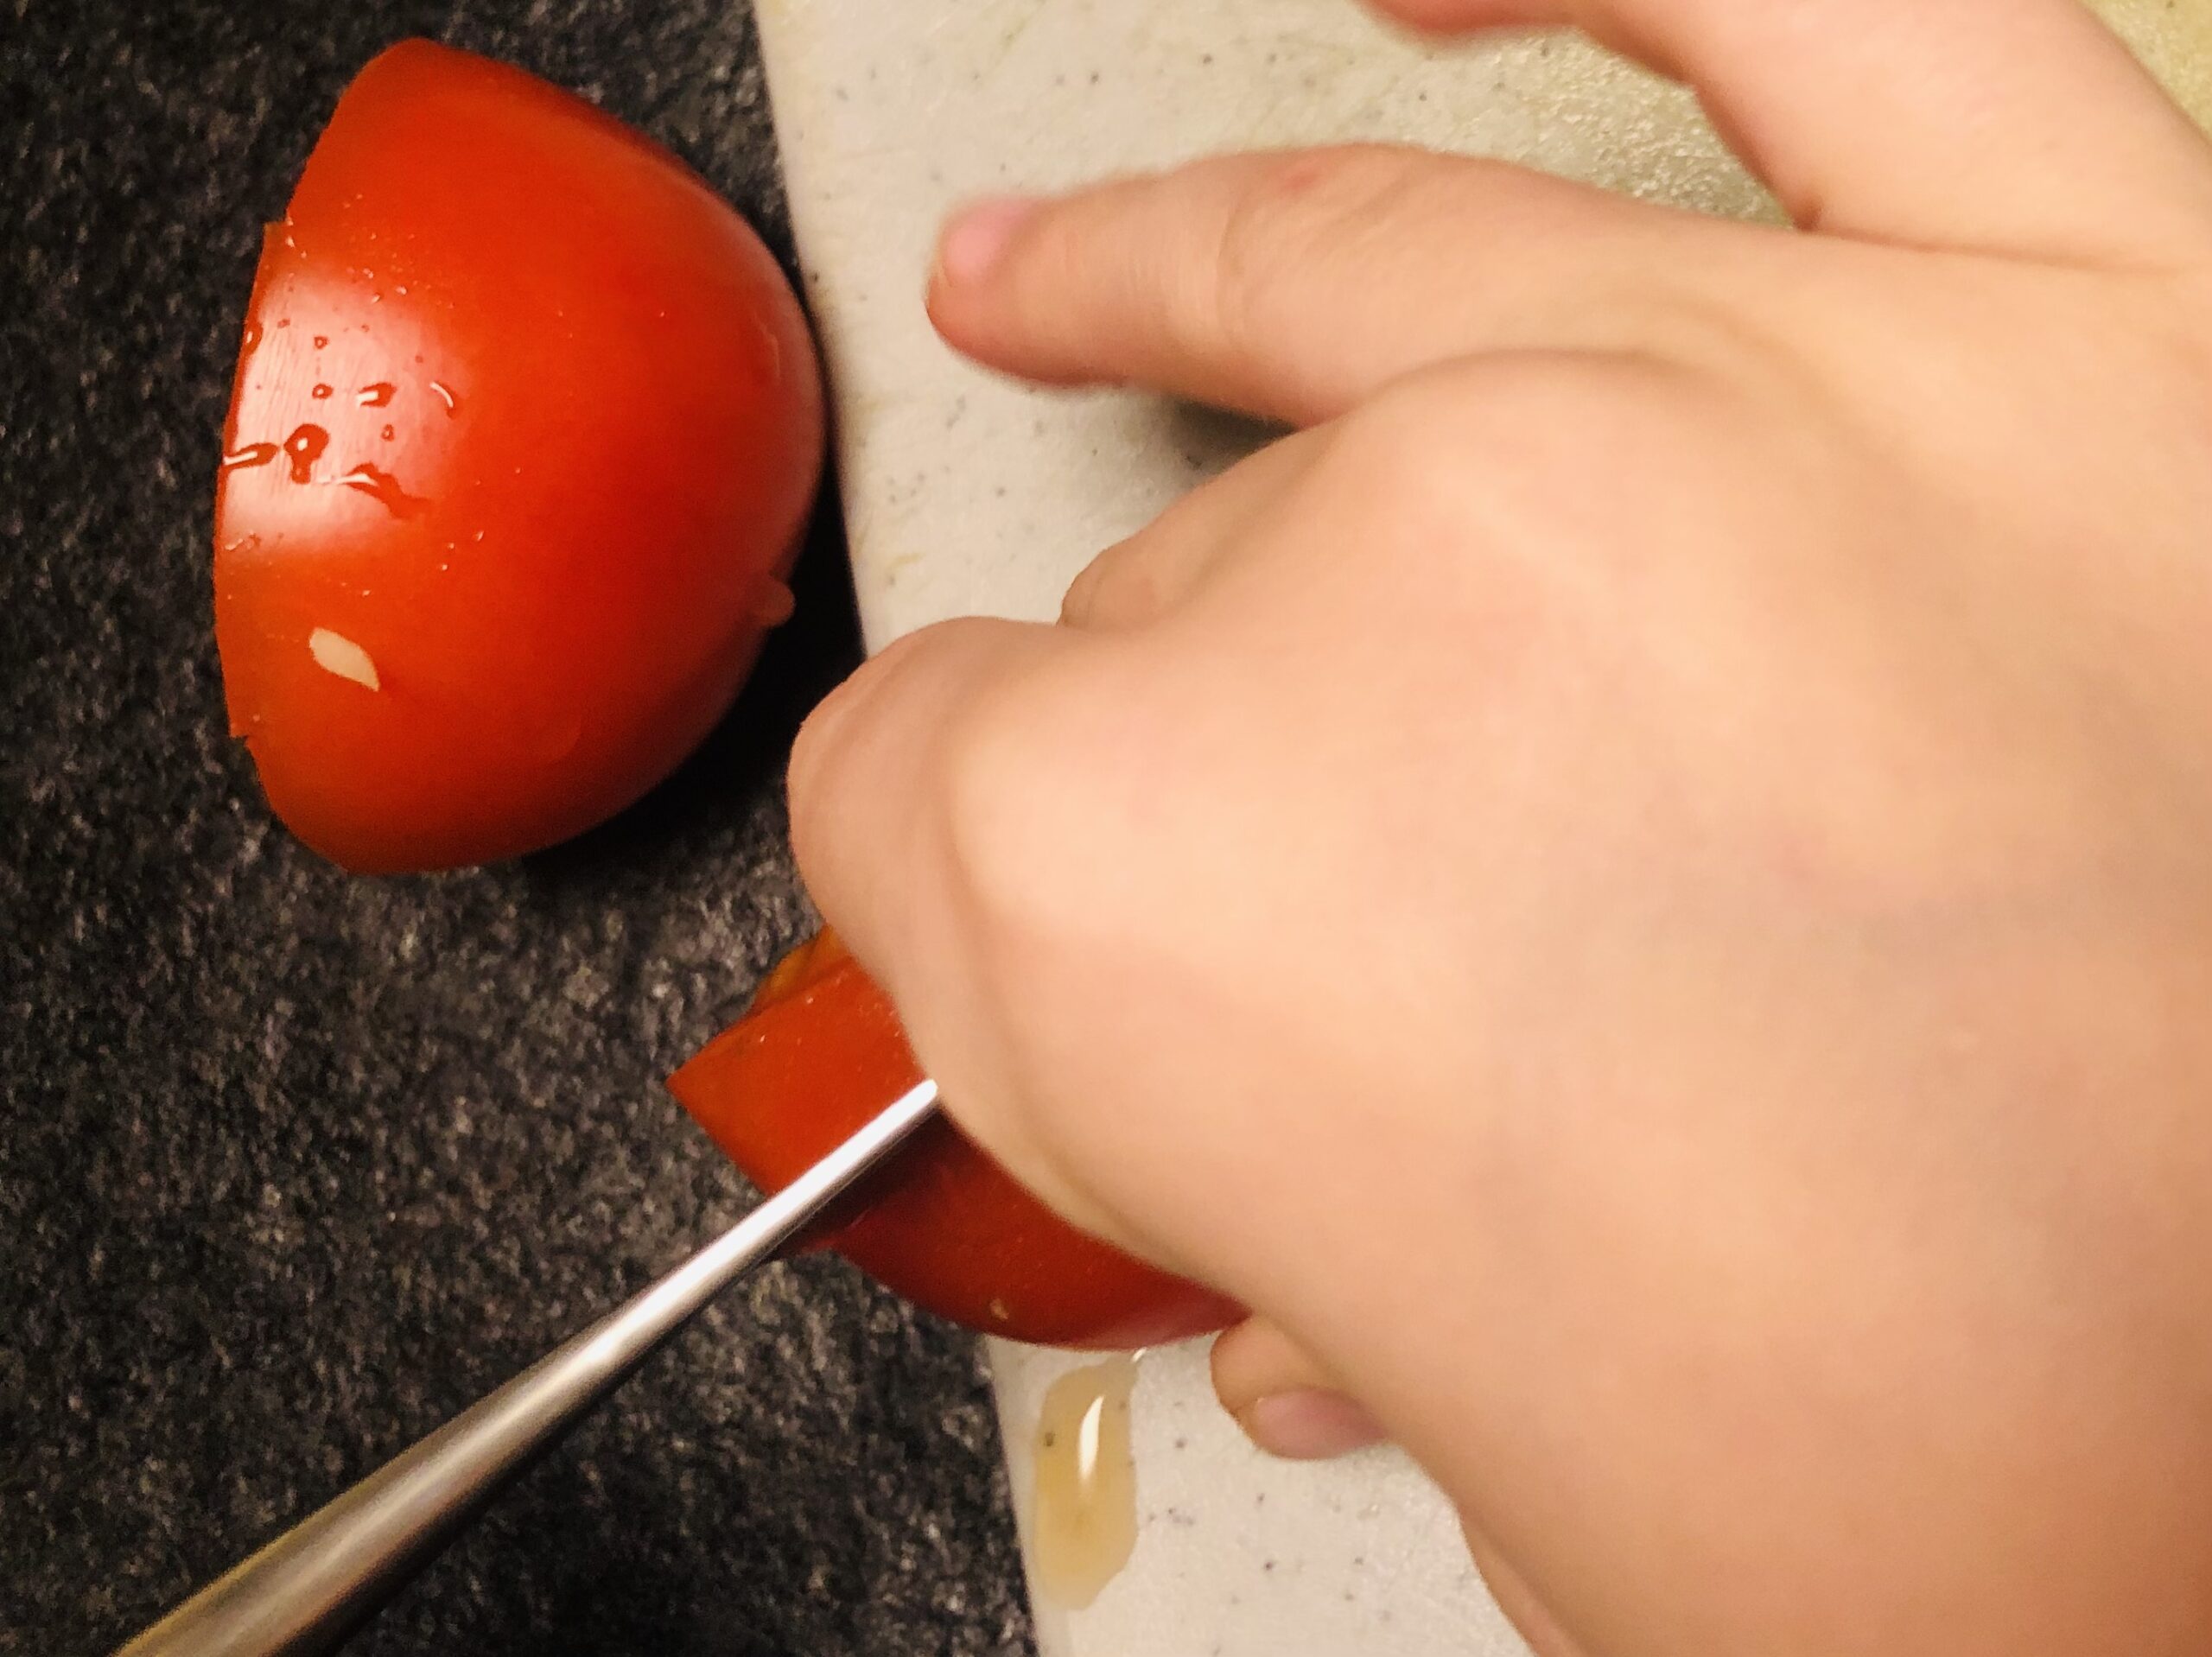 Bild zum Schritt 11 für das Bastel- und DIY-Abenteuer für Kinder: 'Danach halbiert ihr die Tomate und schneidet sie in dicke...'